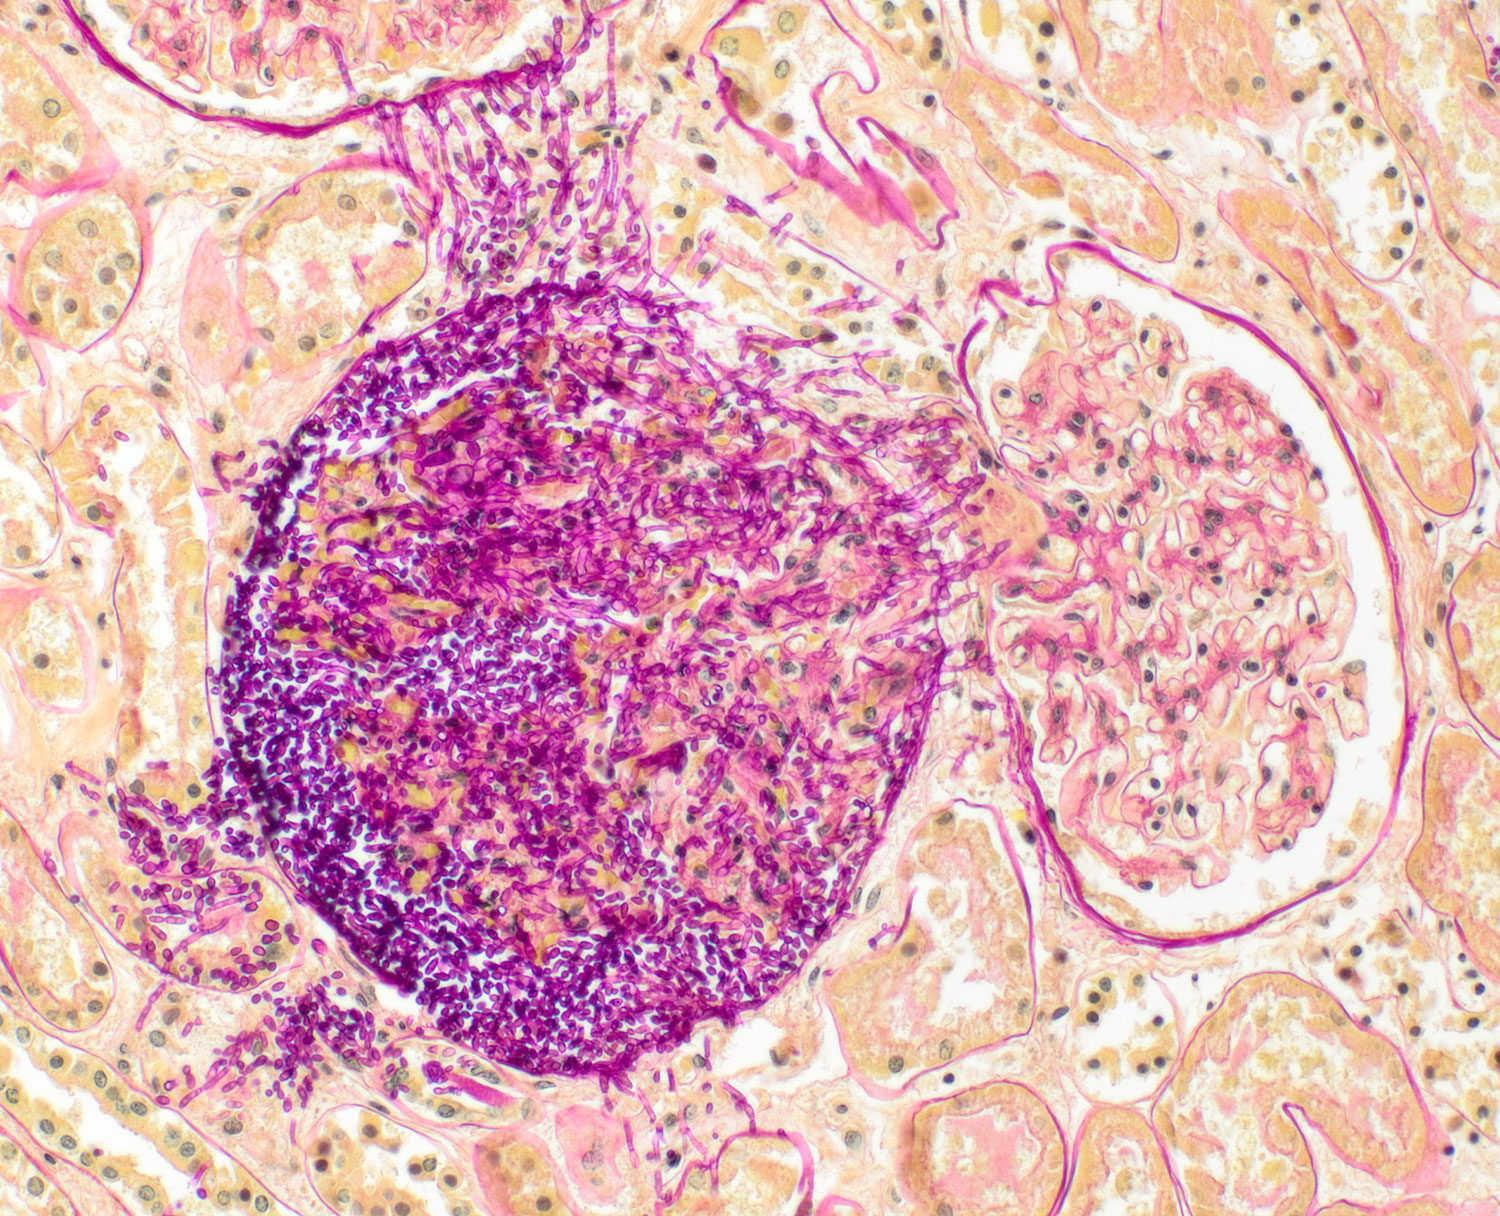 Niere mit Candida | 10X Vergrößerung